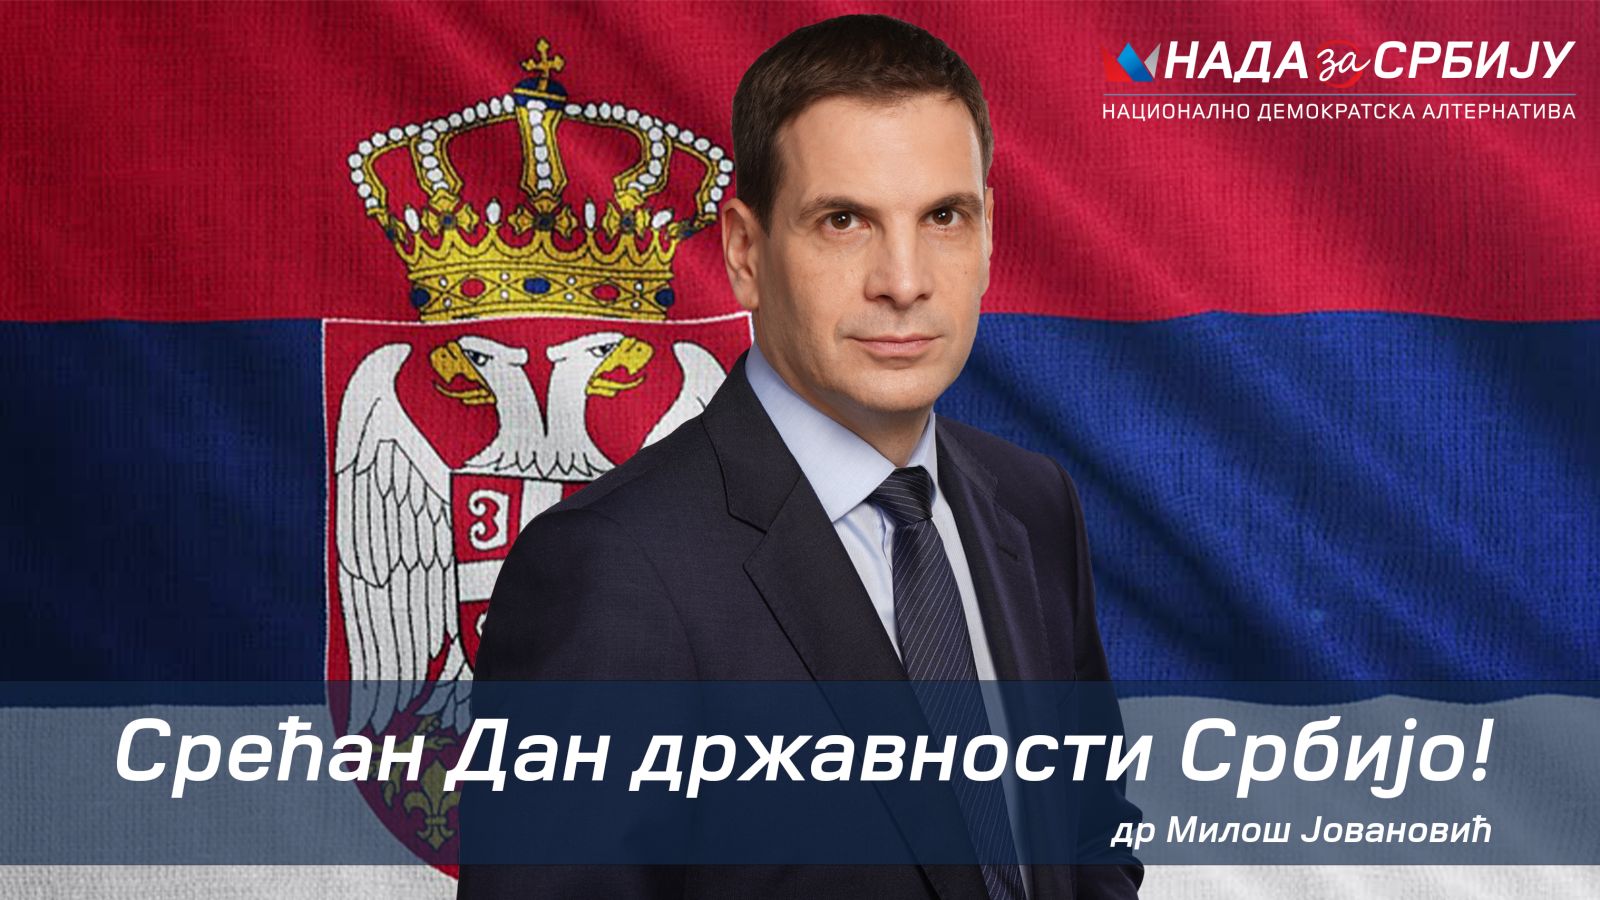 Srećan Dan državnosti Srbijo!